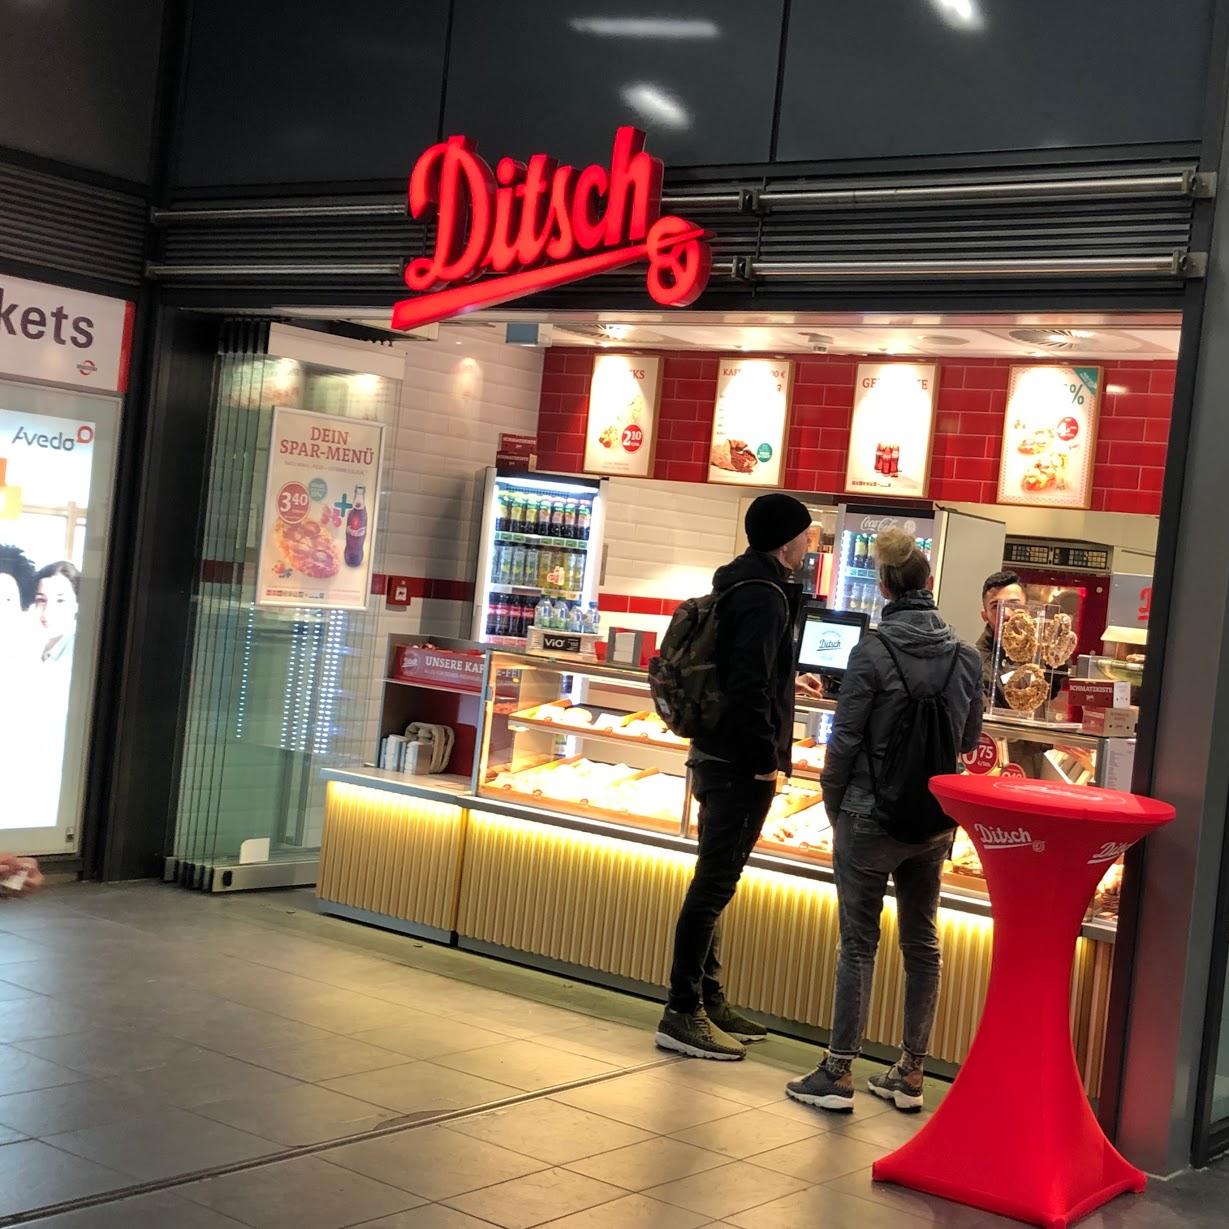 Restaurant "Ditsch" in Gelsenkirchen